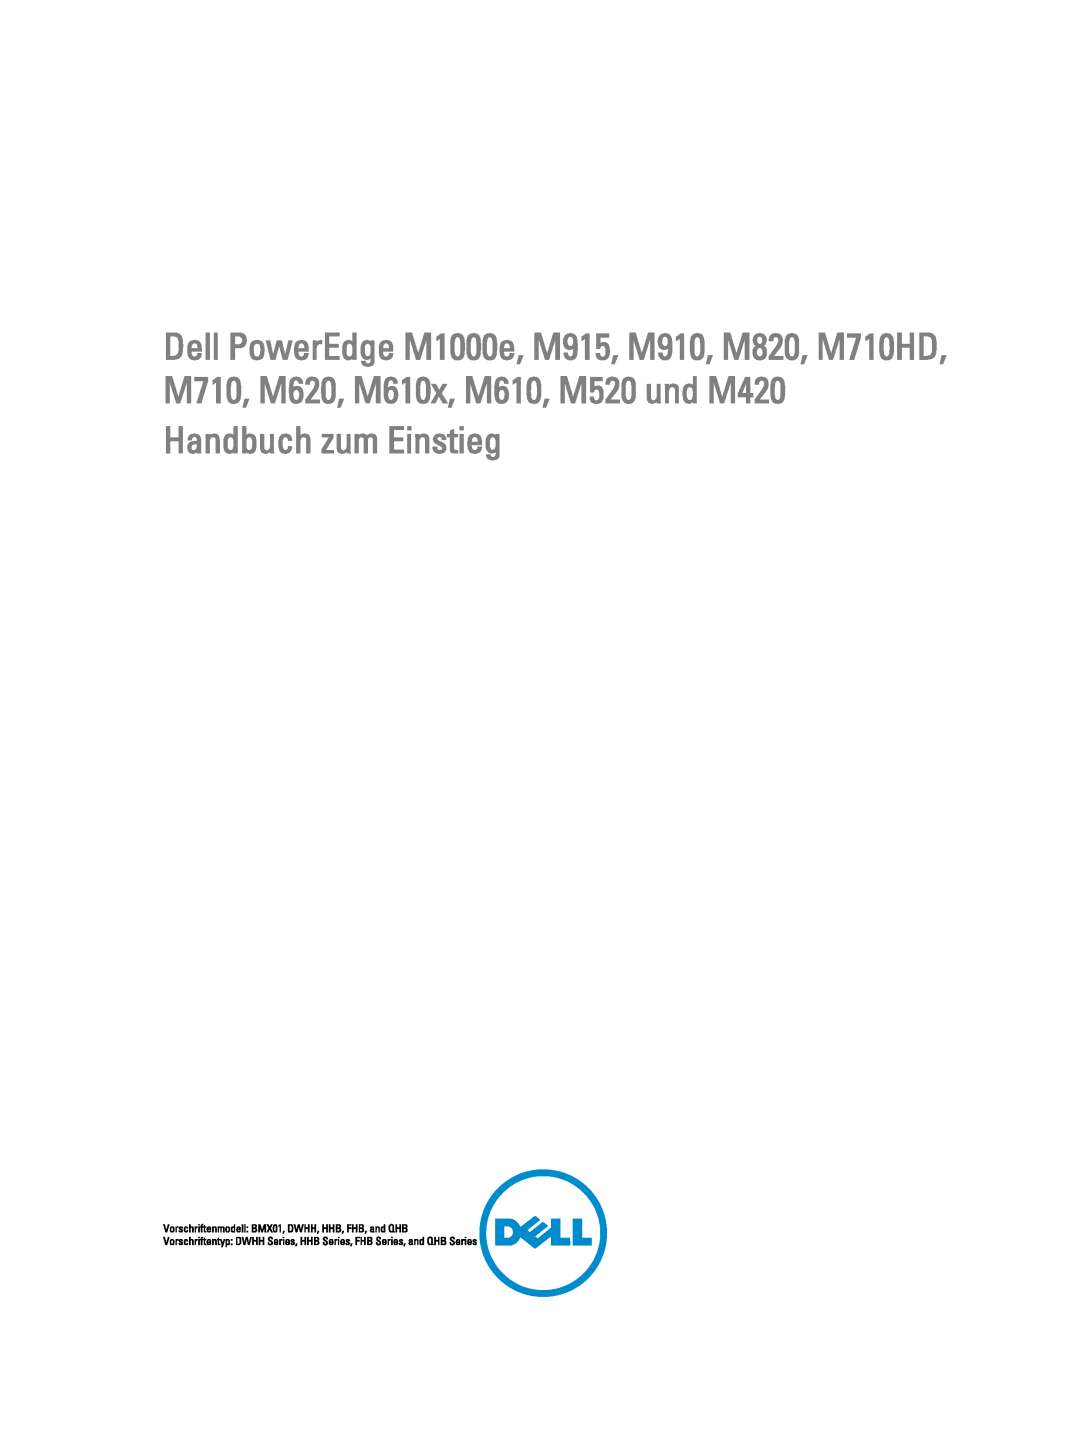 Dell M610x, M710, M620, M520, M420, M1000E manual Handbuch zum Einstieg, Vorschriftenmodell BMX01, DWHH, HHB, FHB, and QHB 